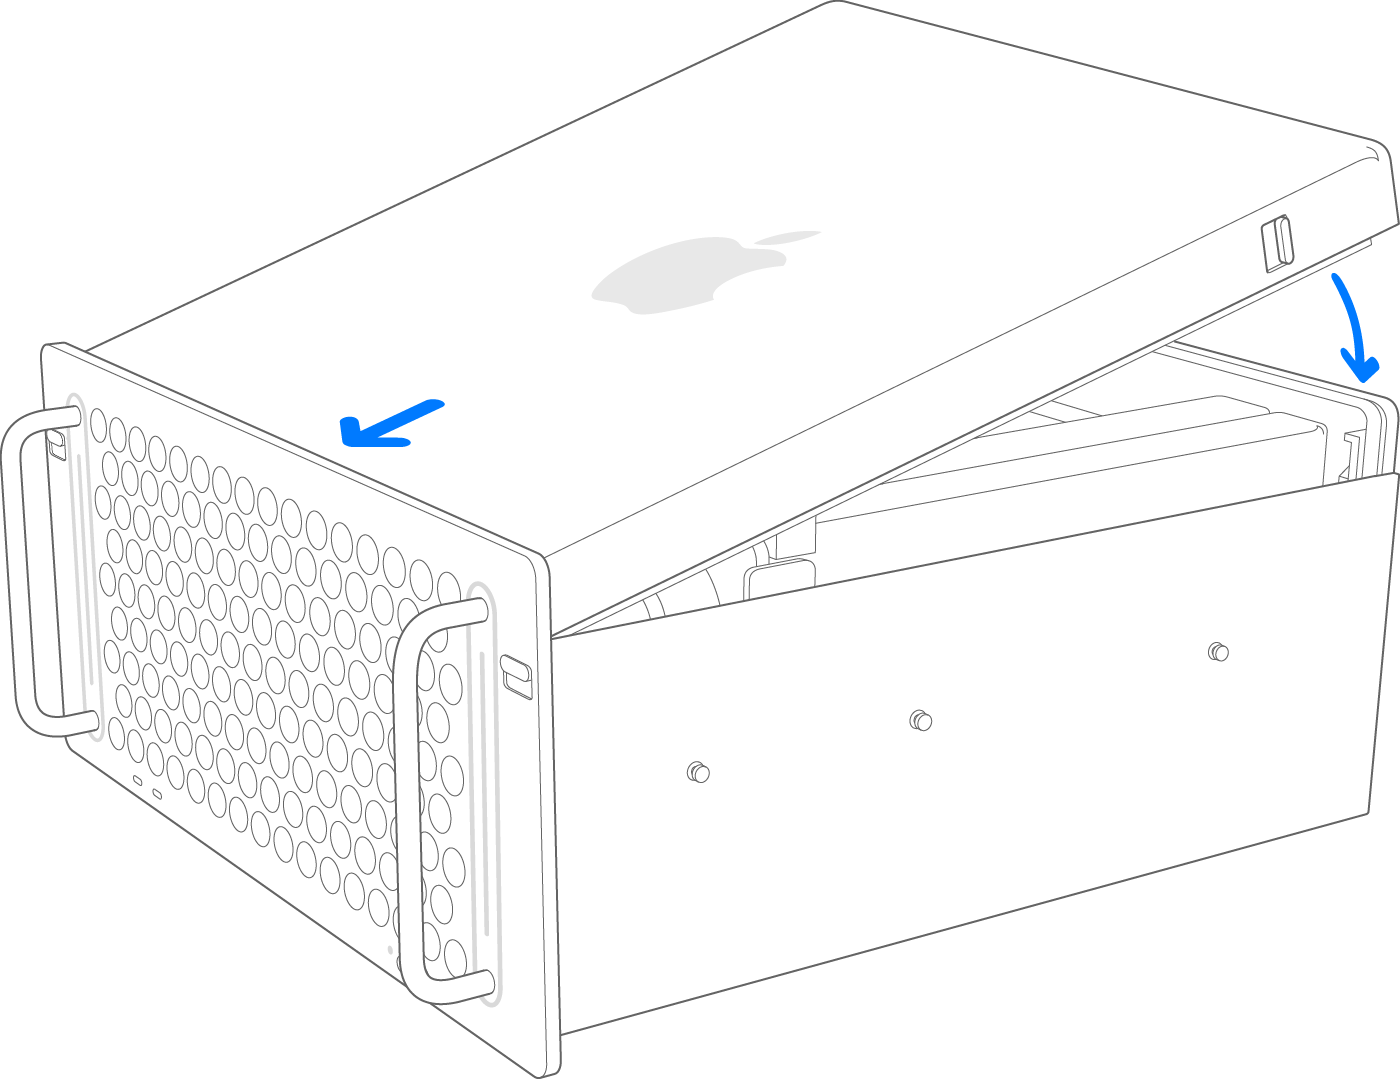 2019년 Mac Pro 다이아그램 랙 상단 덮개 설치